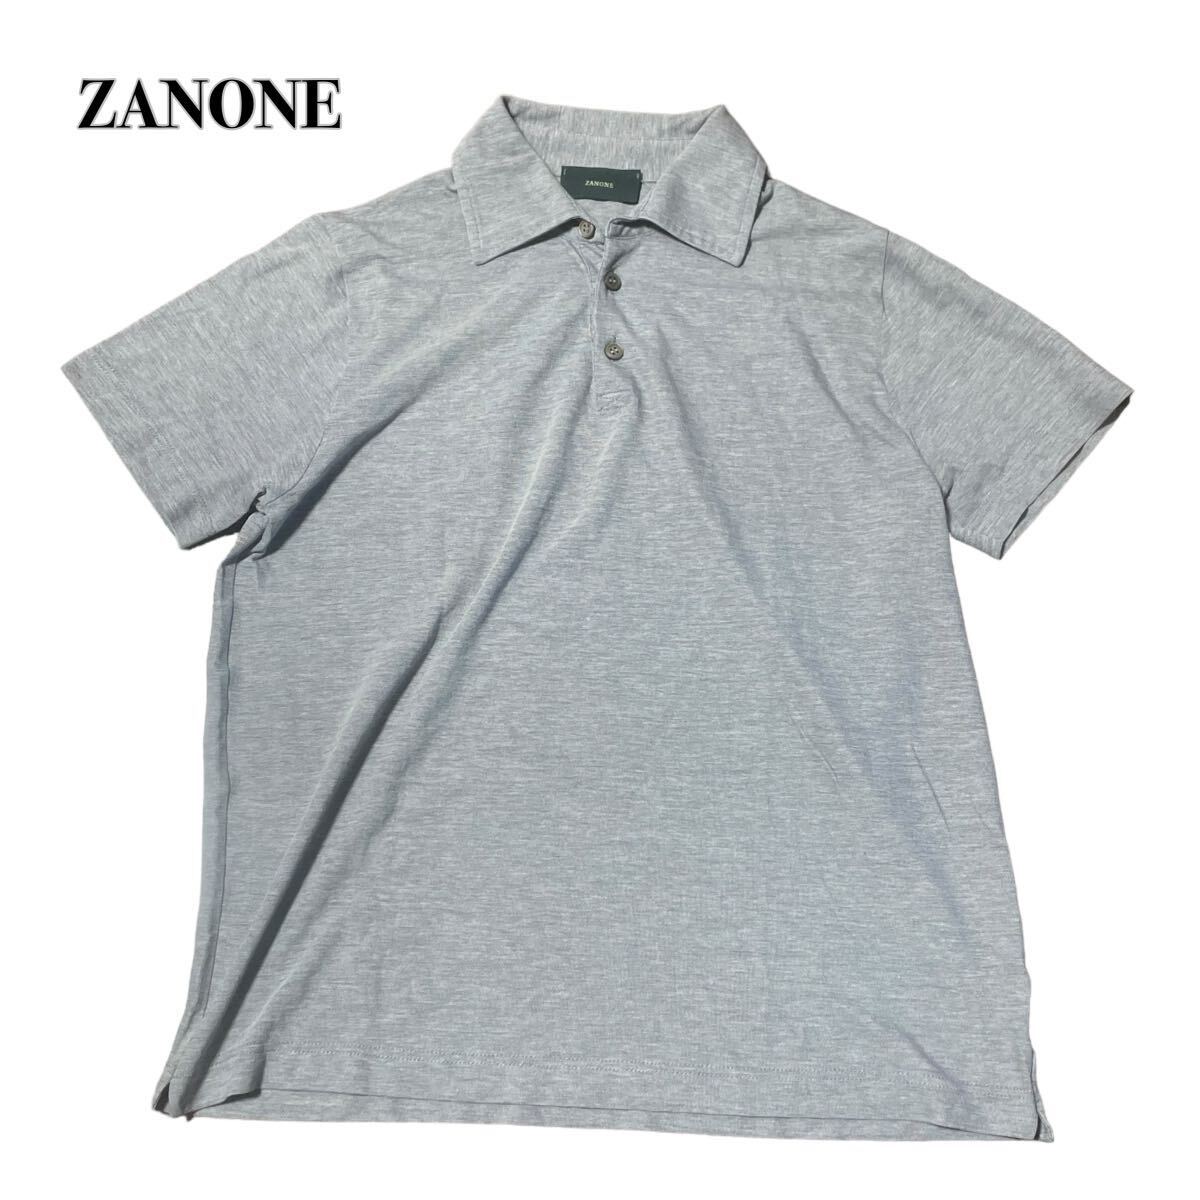 ZANONE ザネーノ ポロシャツ 半袖 グレー 46 M